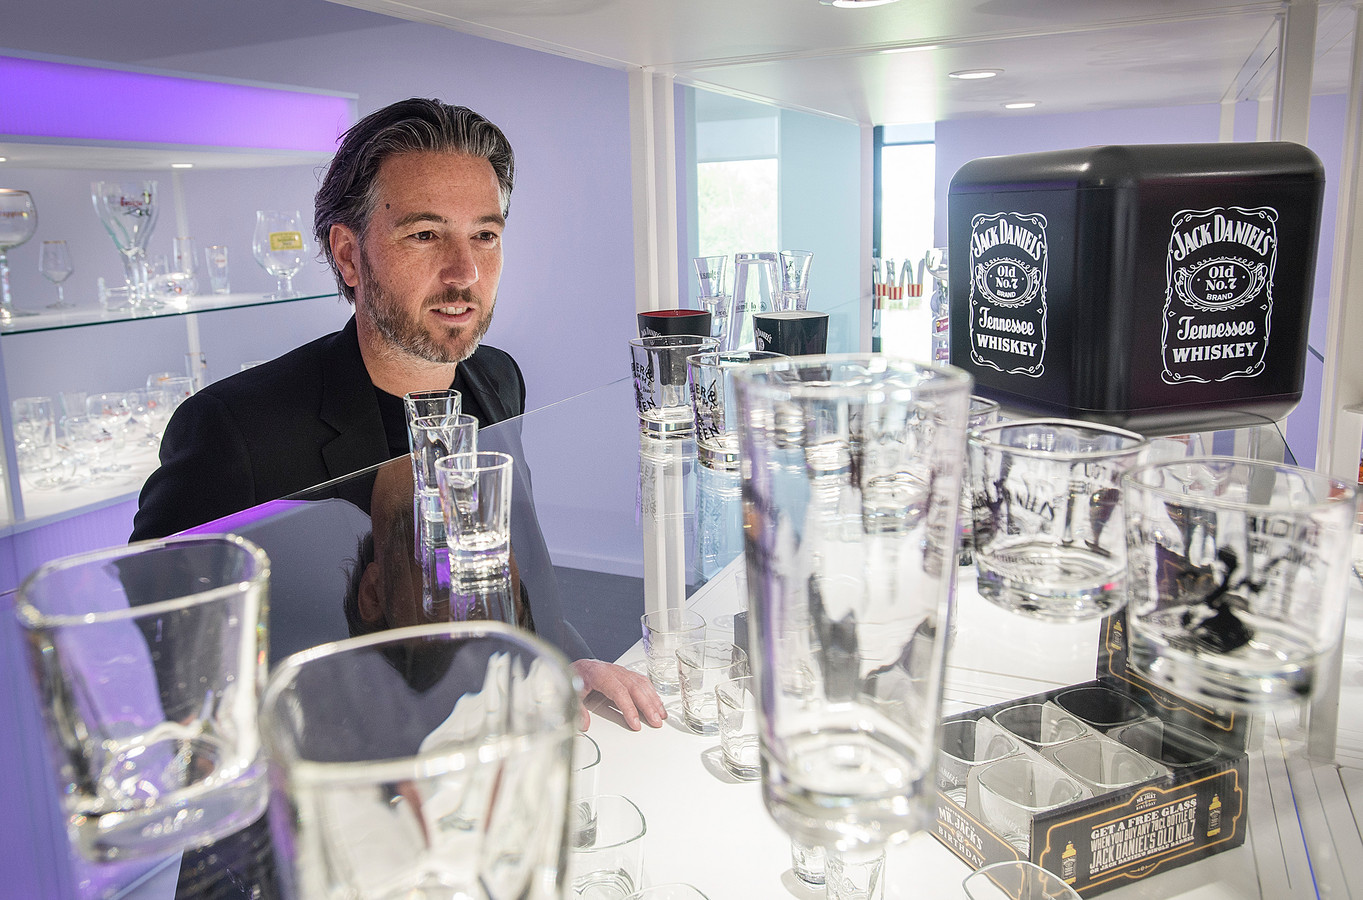 Flikkeren Universiteit Inleg Brabanders bedrukken miljoenen glazen voor Jack Daniels | Foto | AD.nl